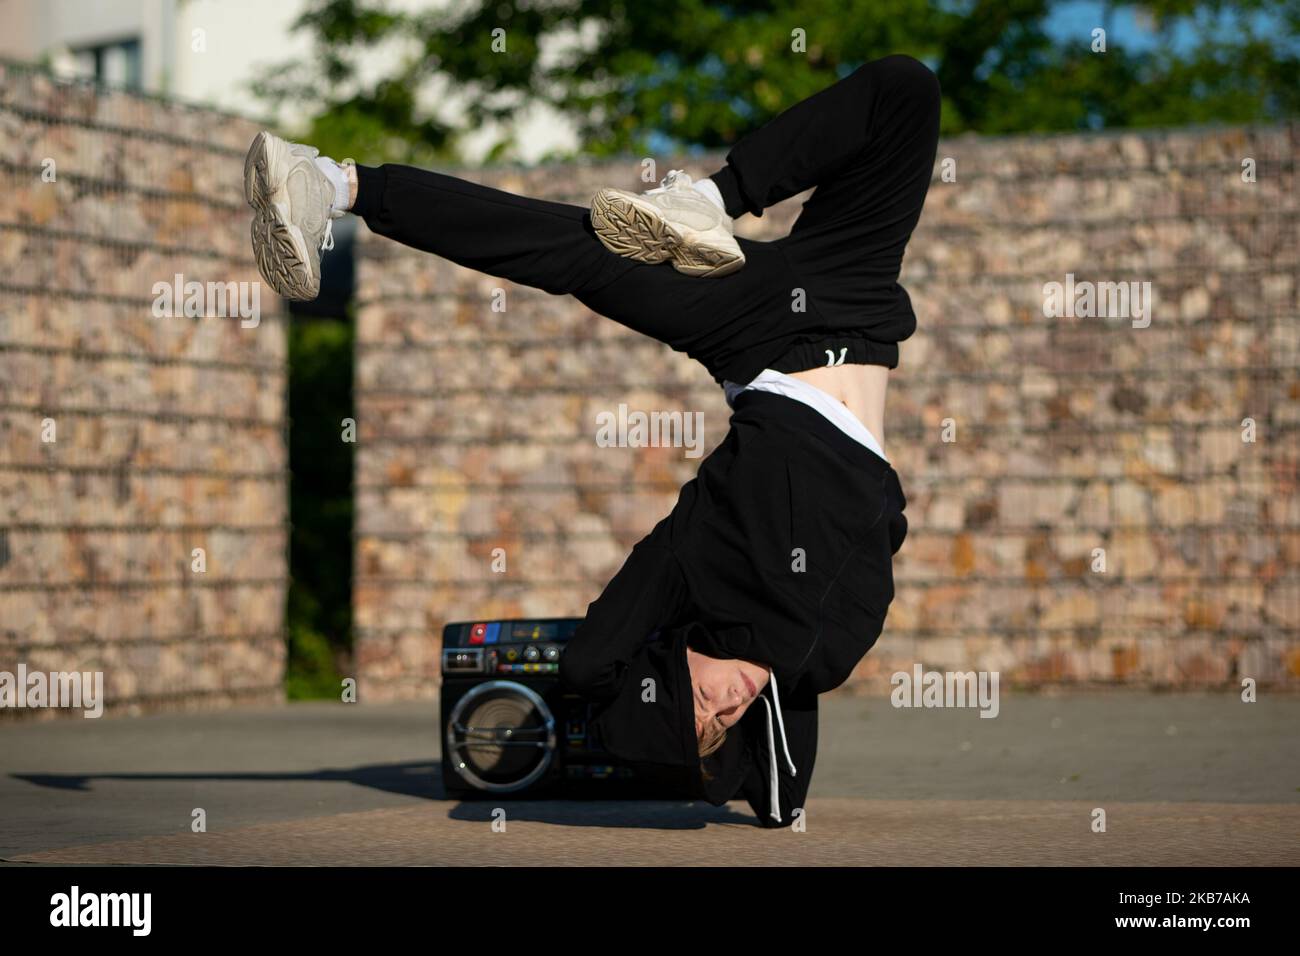 Breakdance-Tänzerin.Ein Junge in Breakdance-Position. Eine Tänzerin in einer schwierigen Tanzpose. Ein Junge tanzt Breakdance. Stockfoto